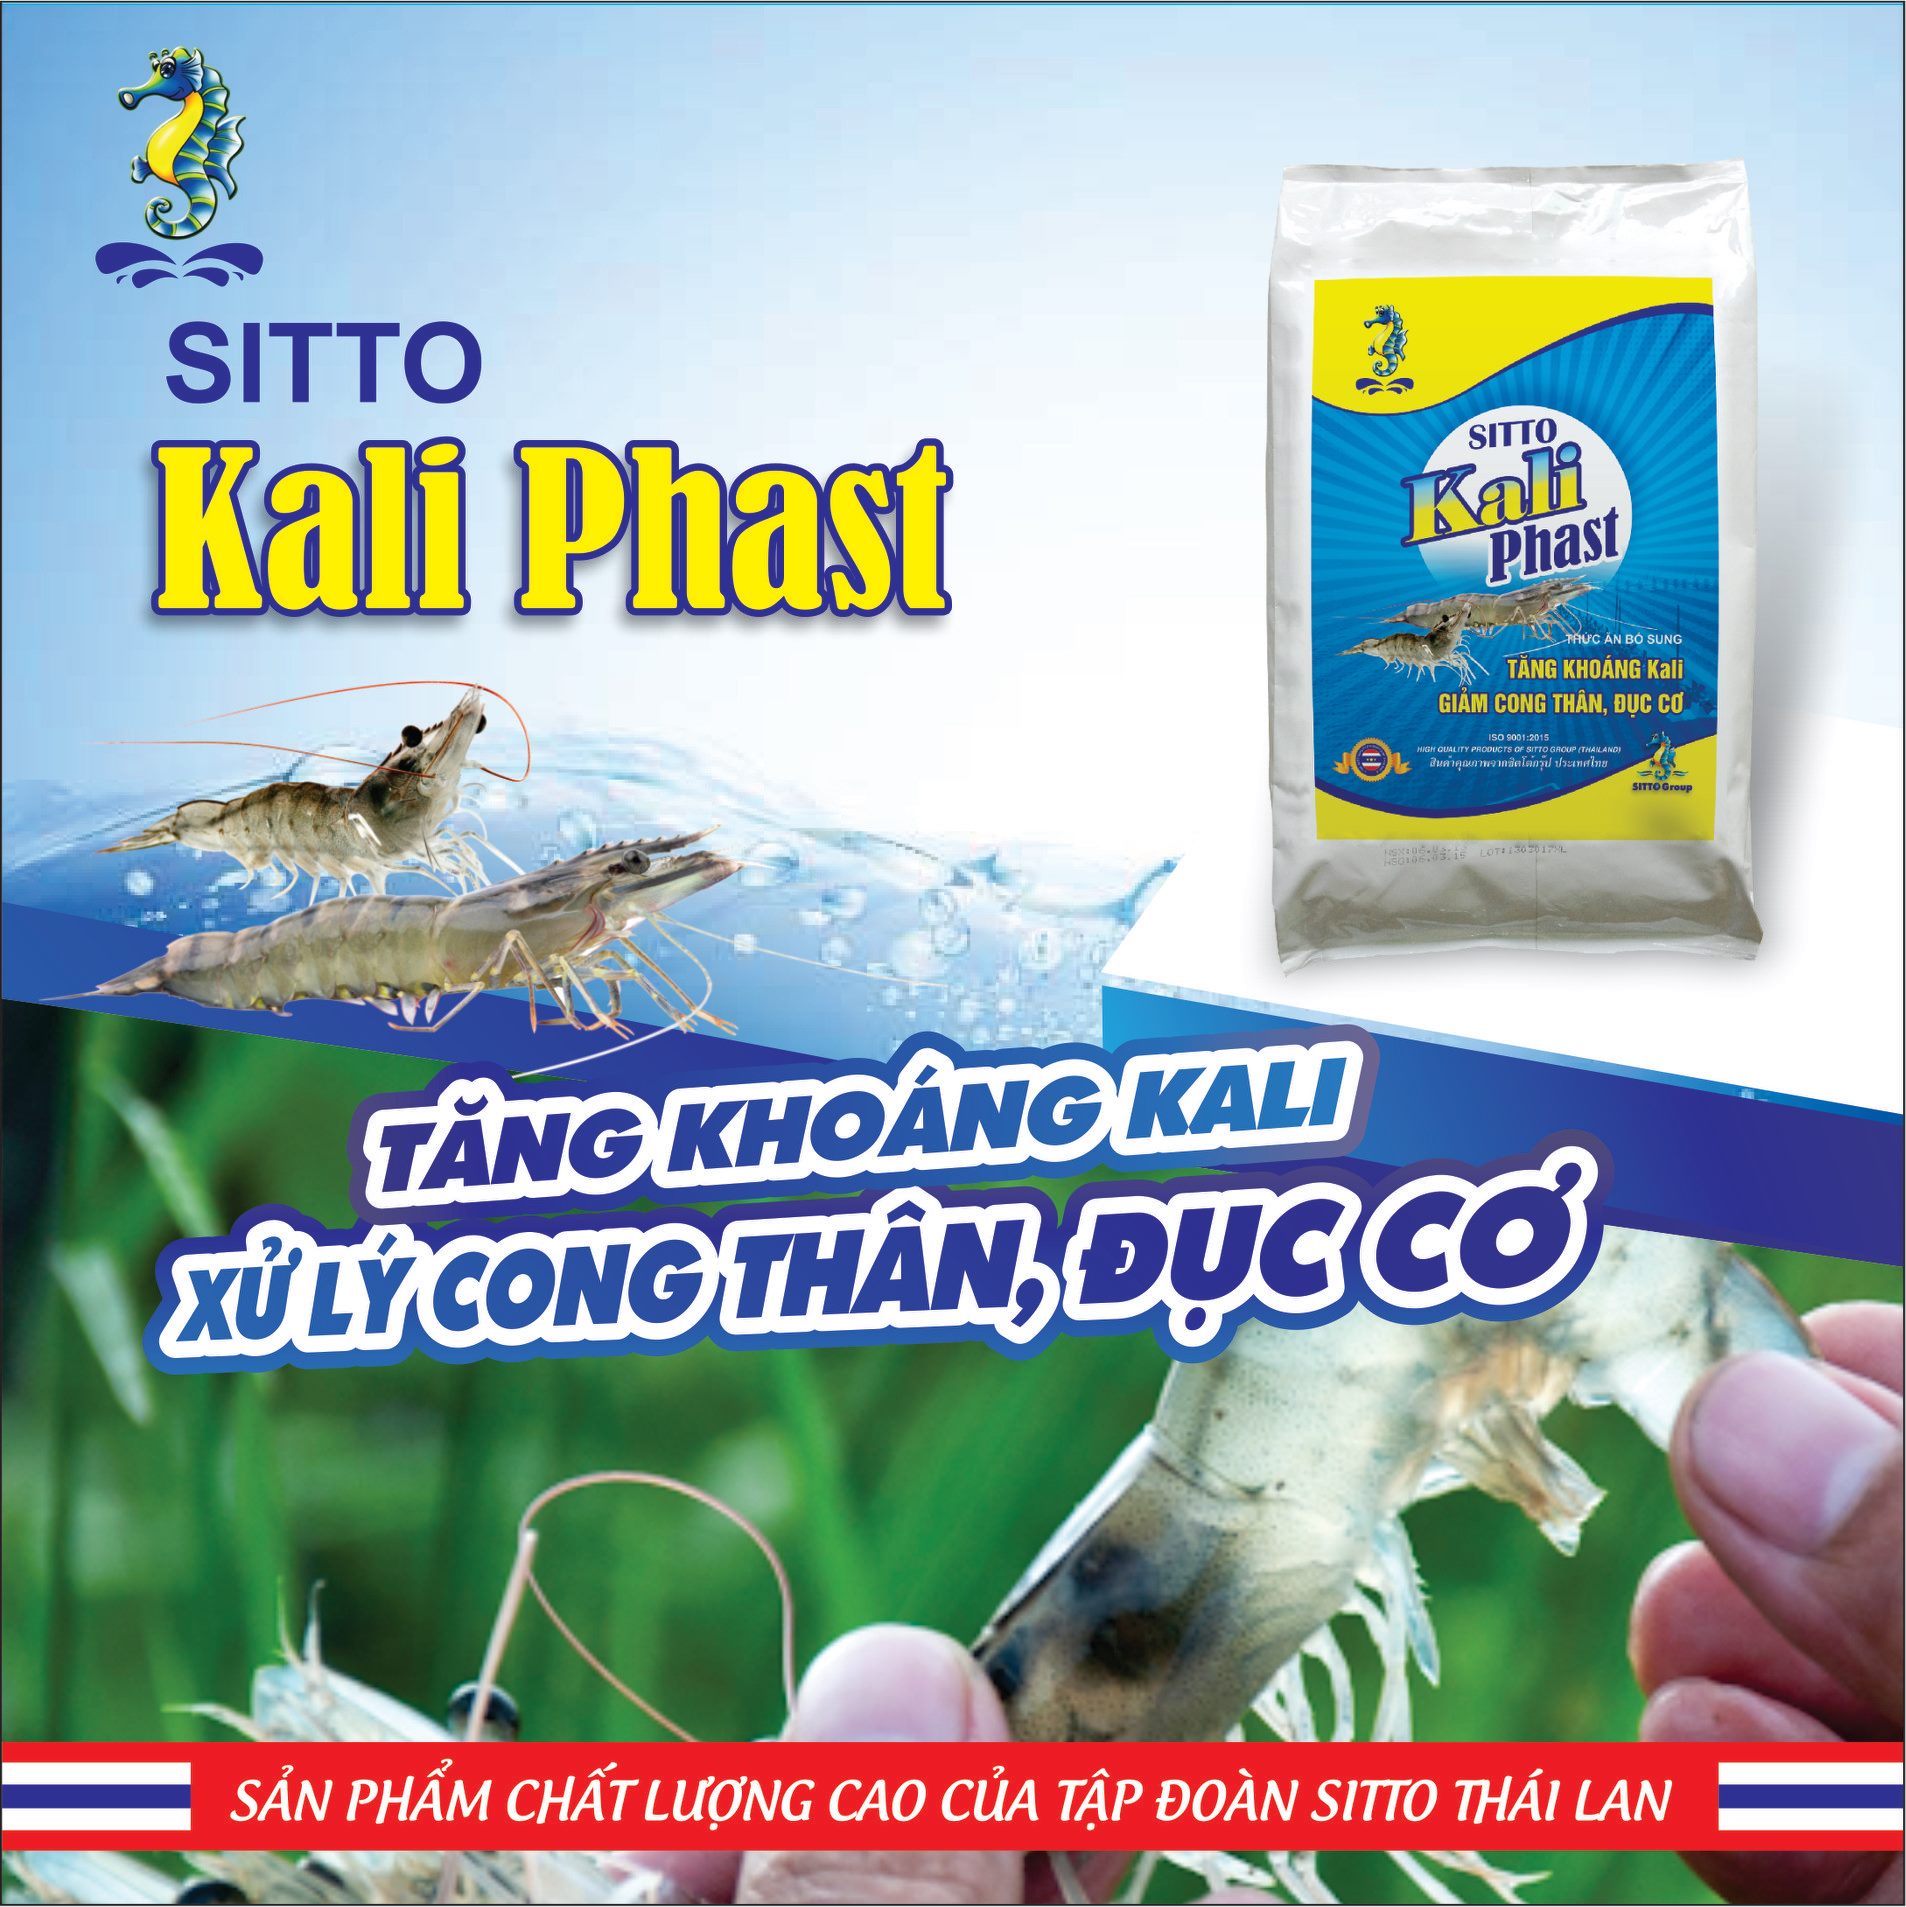 Sitto Kali-Phast (Bao 5kg) Xử lý cong thân đục cơ